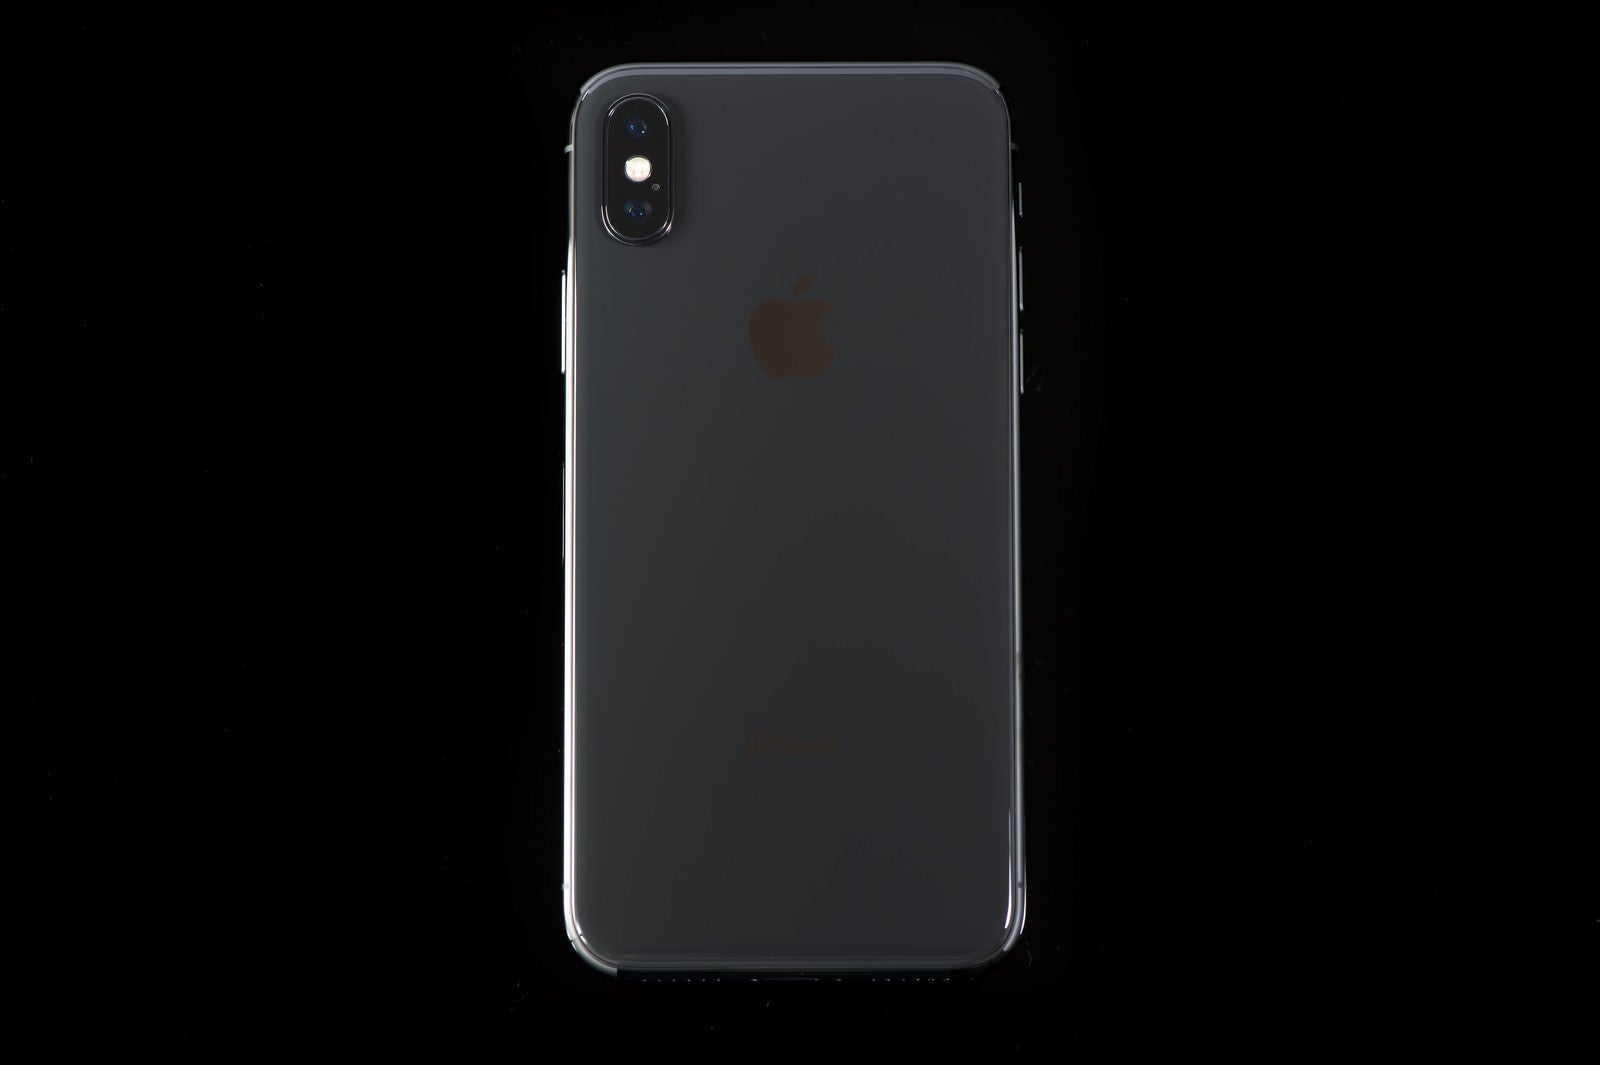 「iPhone X ブラック」の写真